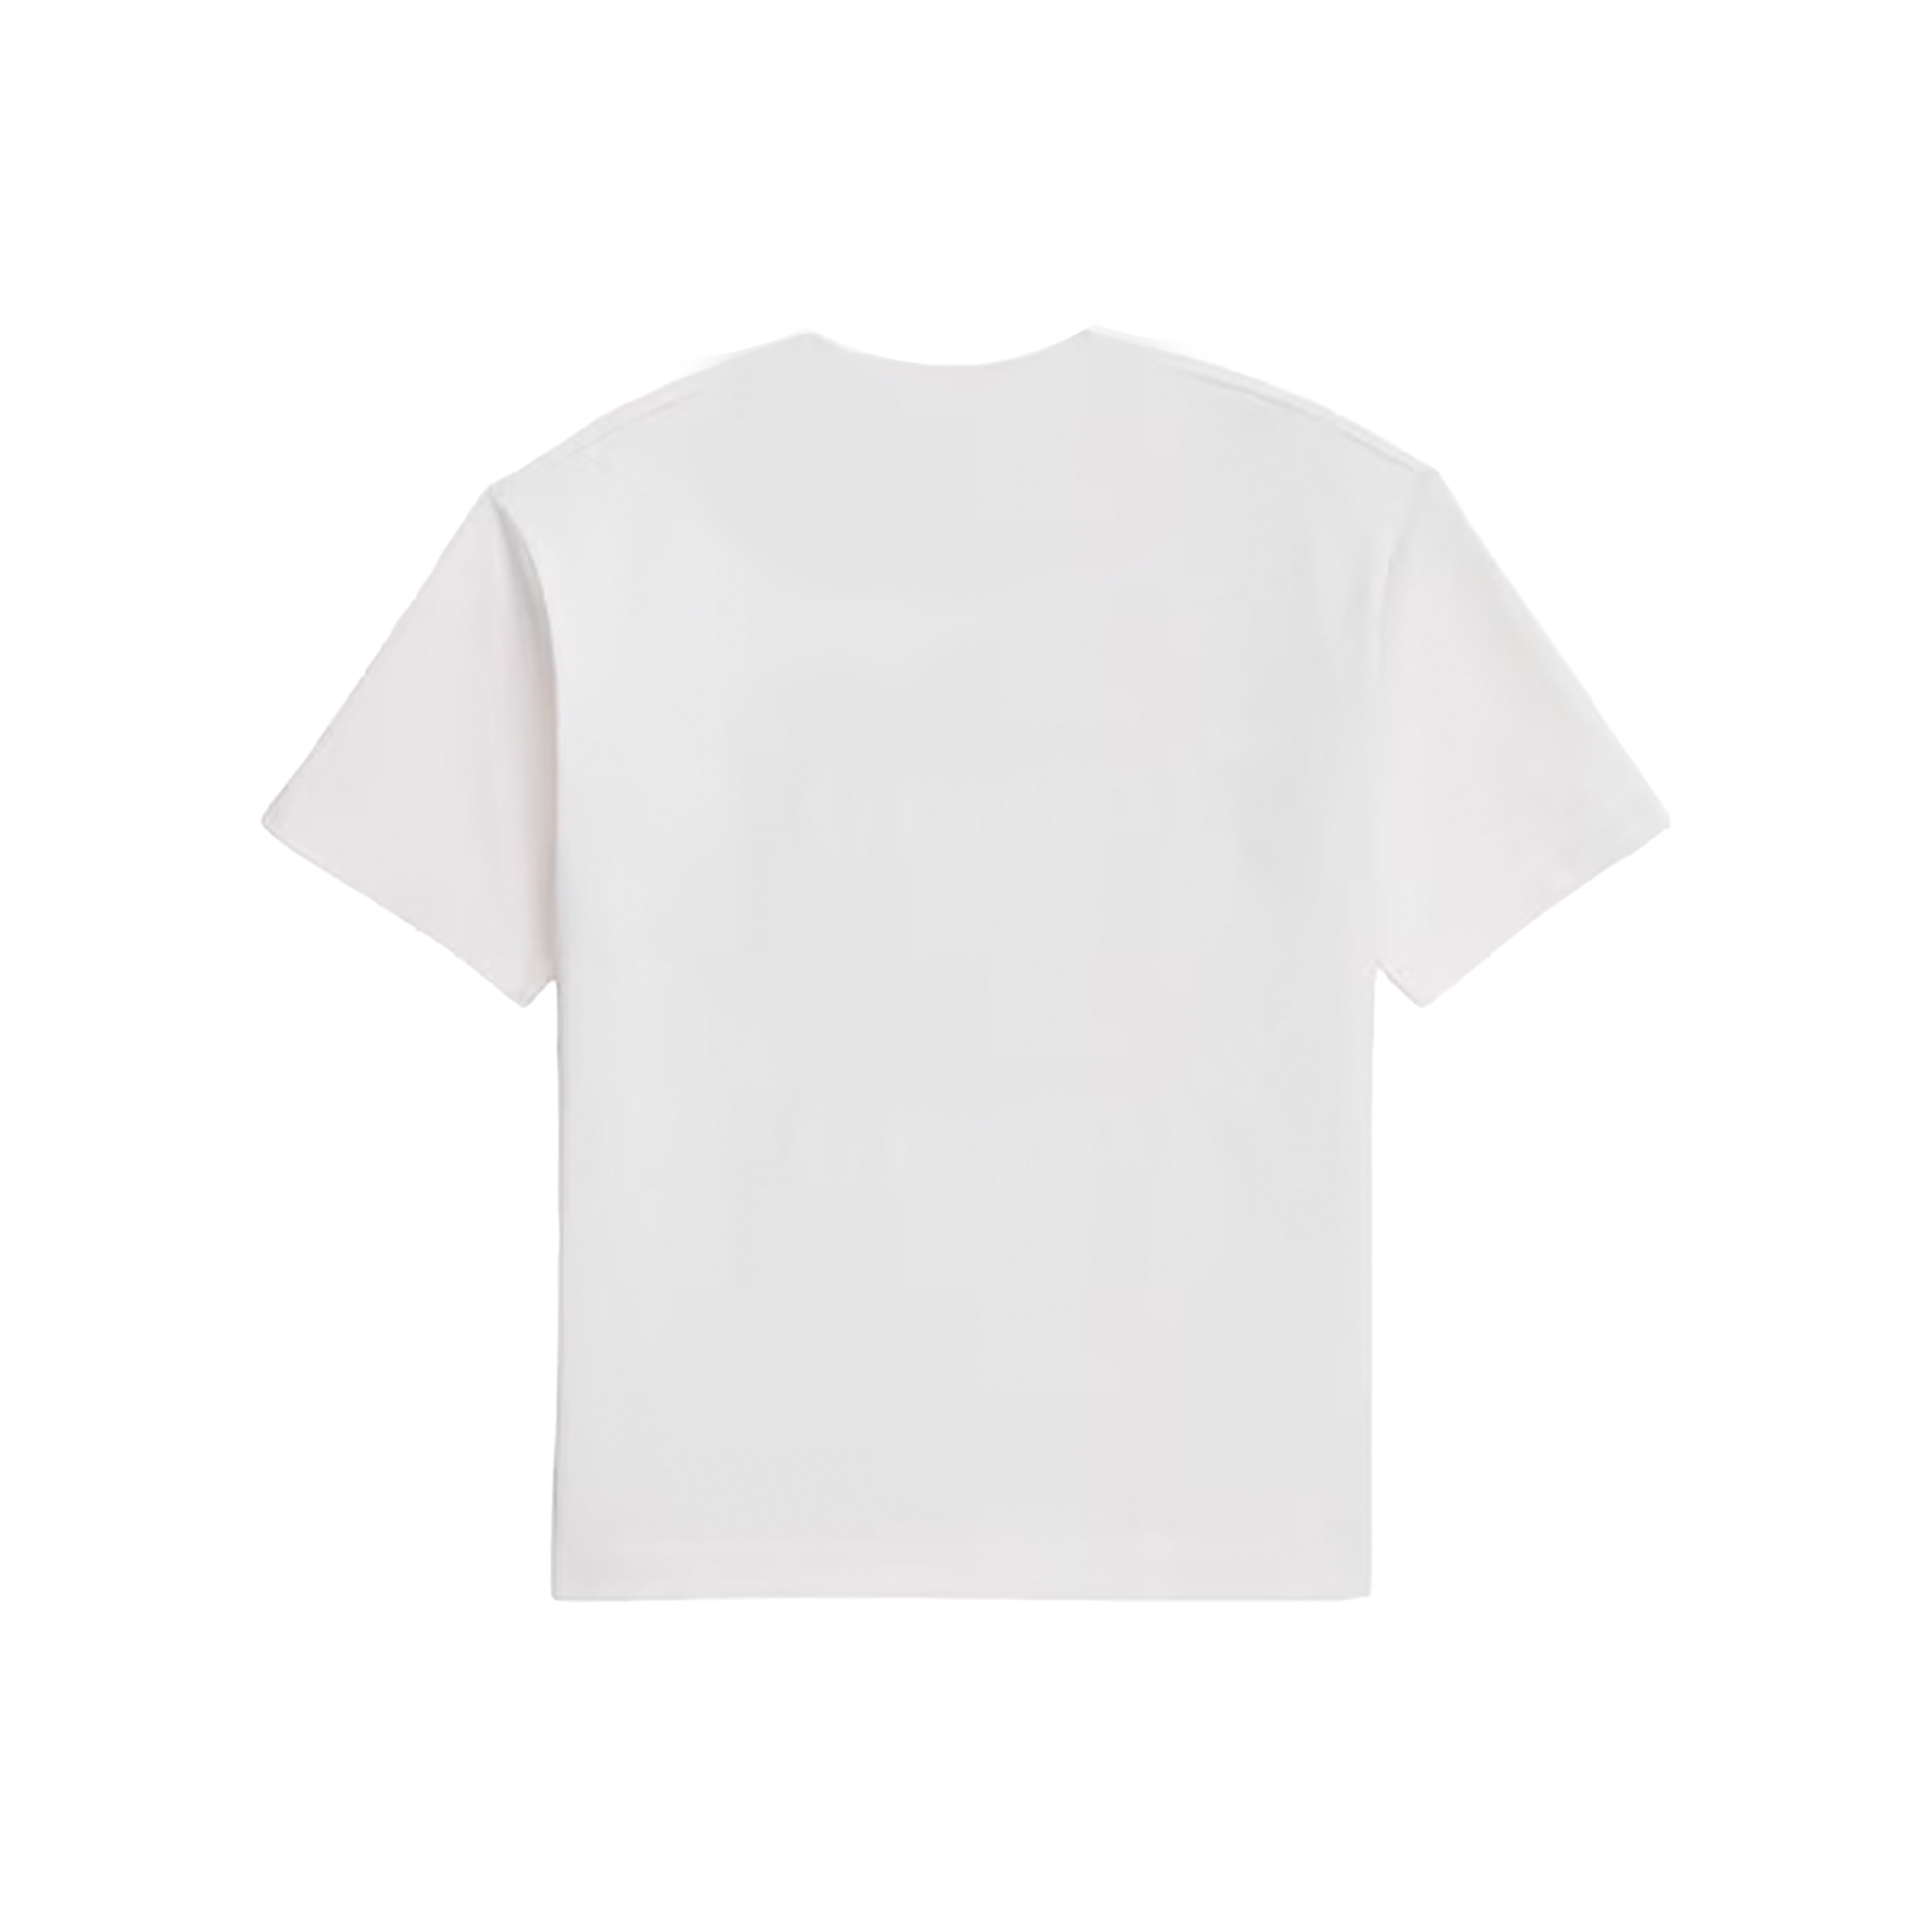 Palace x Gap Heavy Jersey T-Shirt White